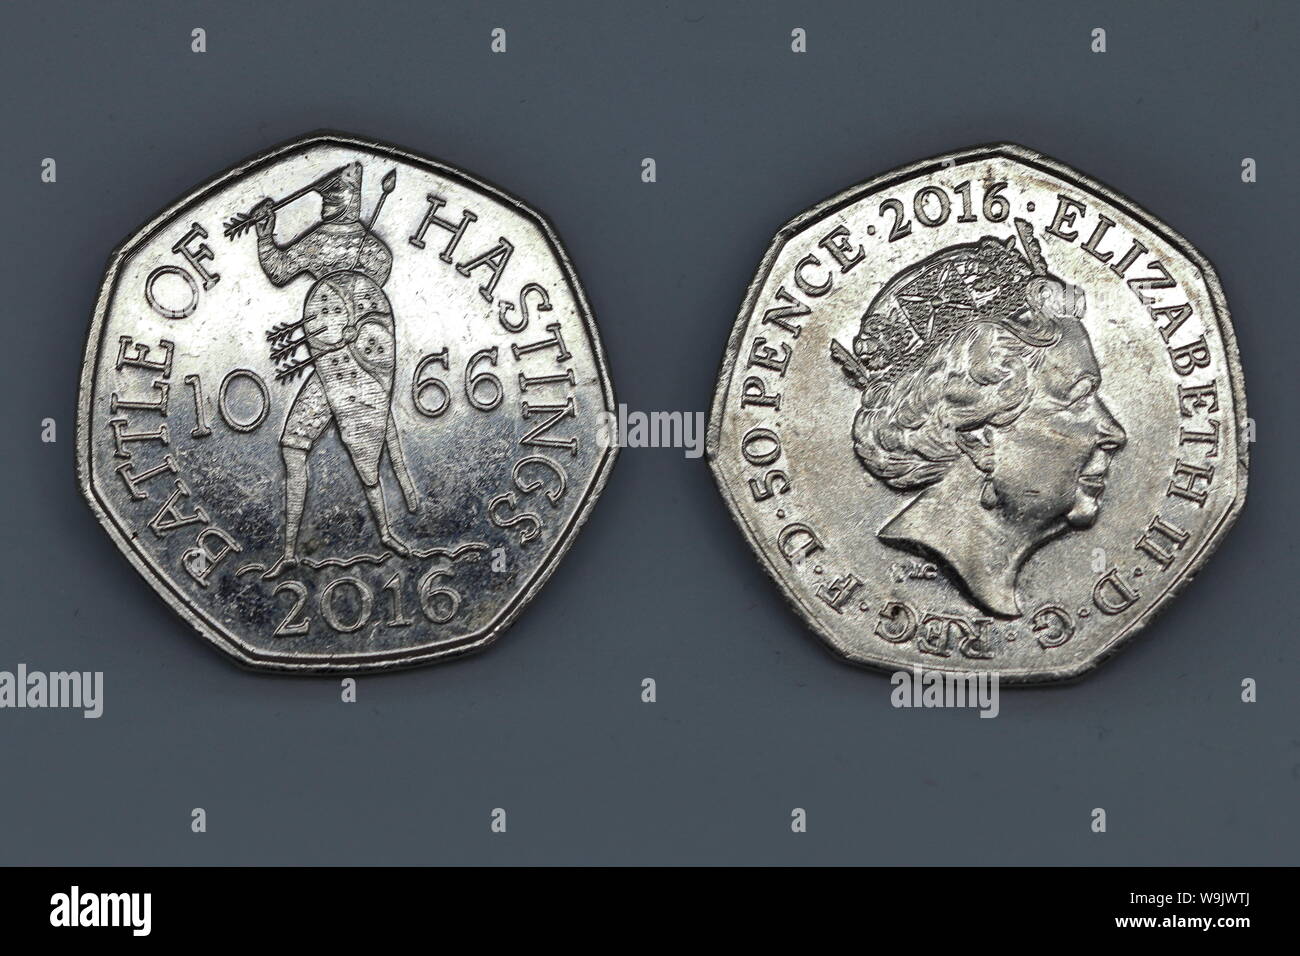 Les deux faces d'une pièce de cinquante pence qui commémore la bataille de Hastings, 1066, a été imprimé par la Monnaie royale de 2016 Banque D'Images